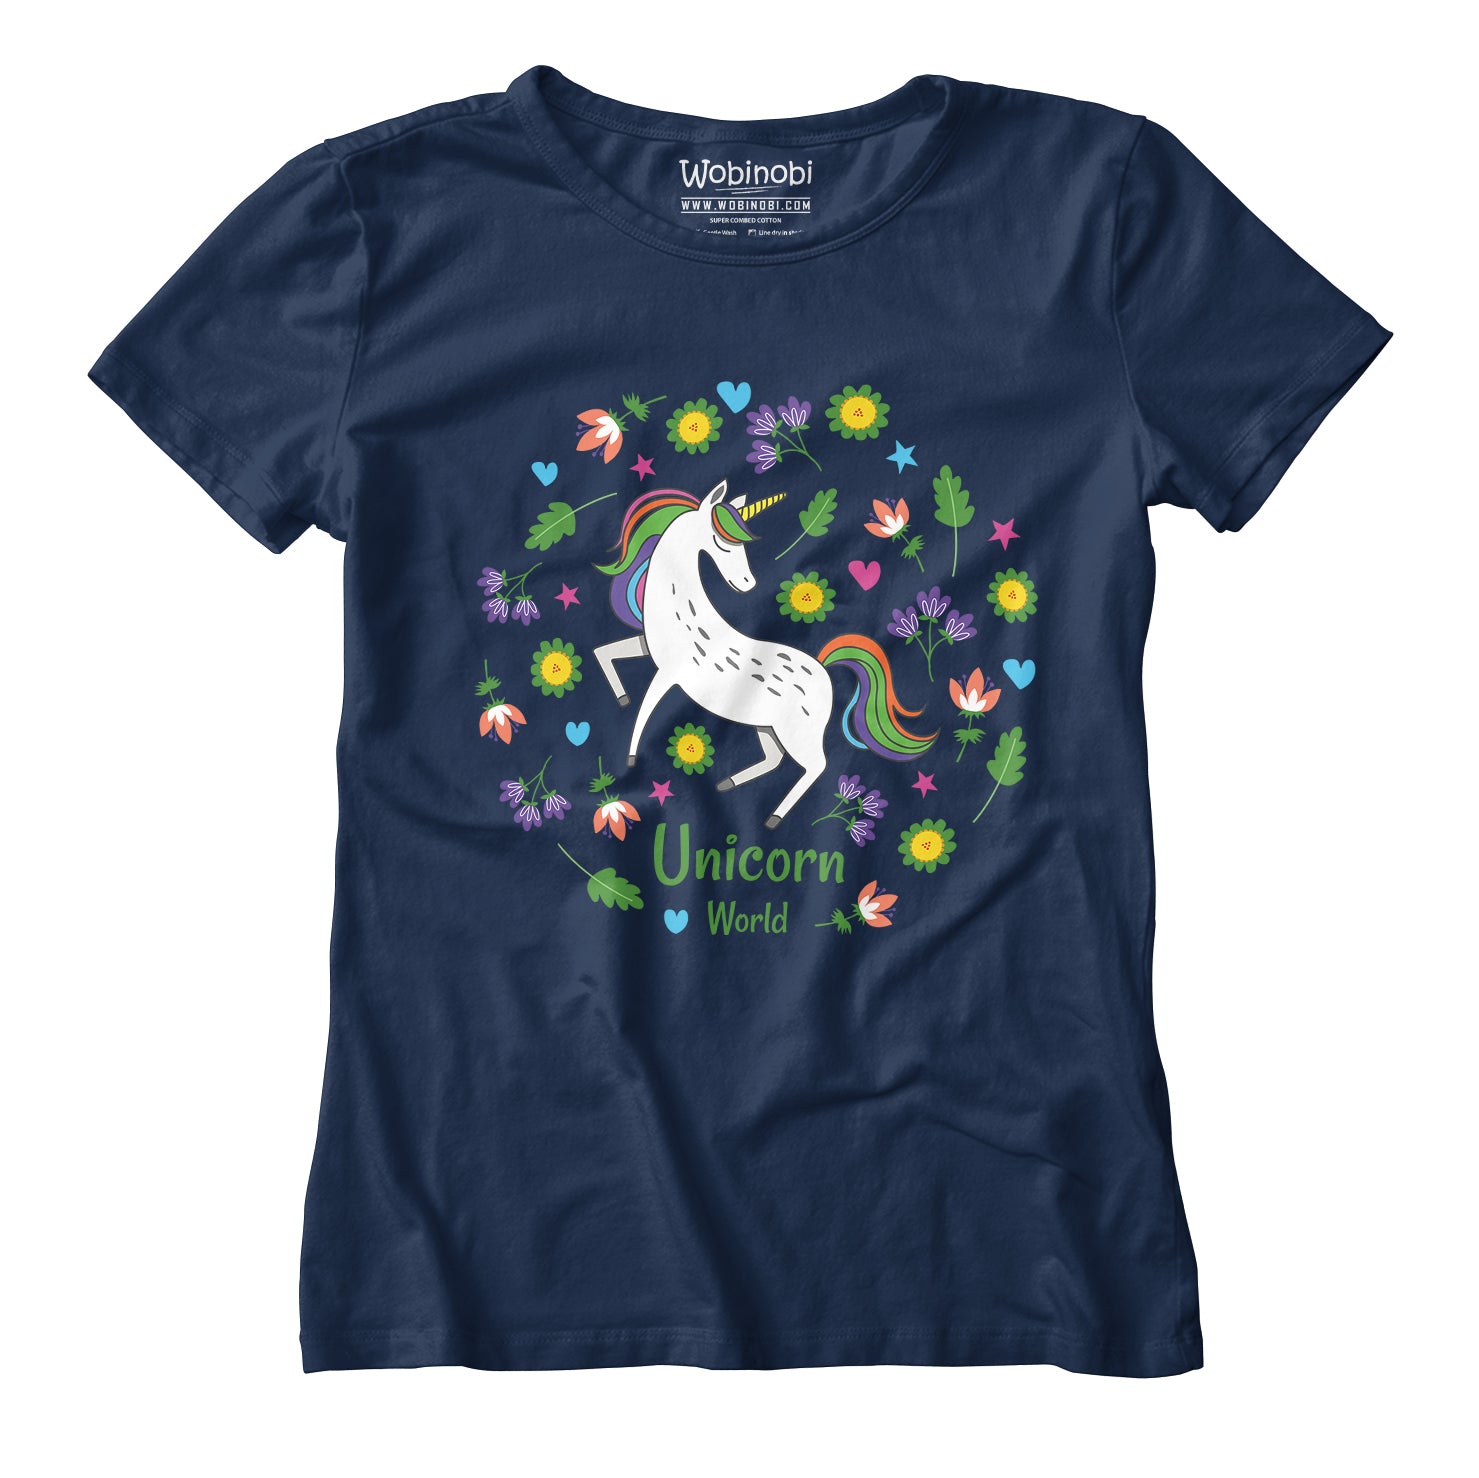 Wobinobi Unicorn T-Shirt Cotton 100% World Girls –